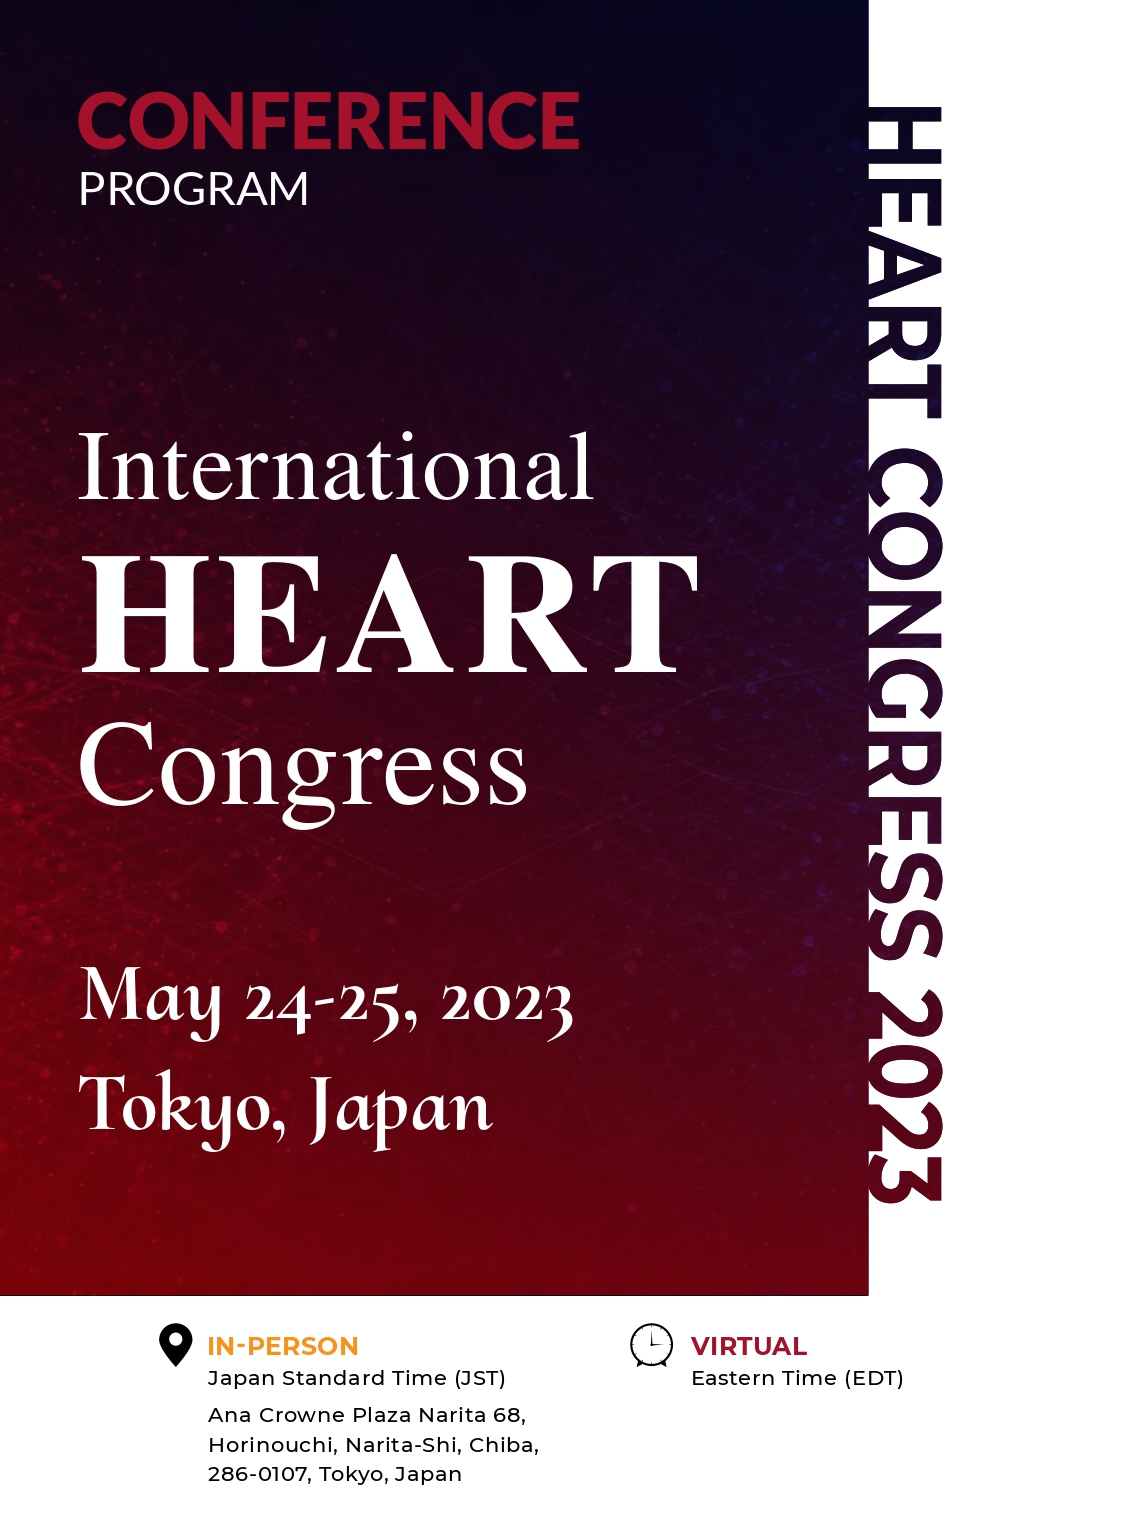 International Heart Congress | Tokyo, Japan Program